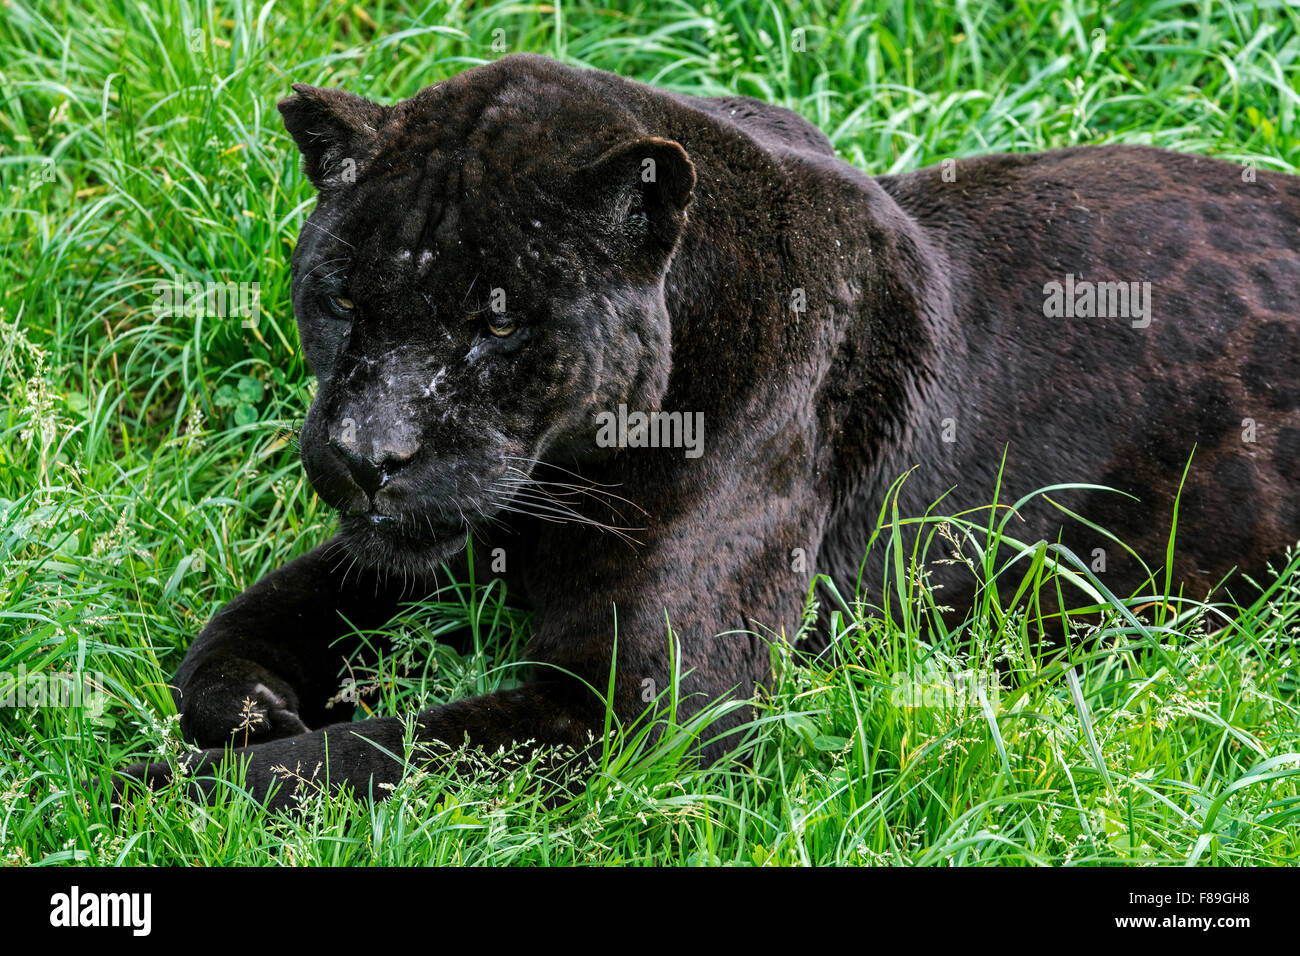 Close up portrait of black panther / melanistic Jaguar (Panthera onca) allongé dans l'herbe, originaire d'Amérique centrale et du Sud Banque D'Images